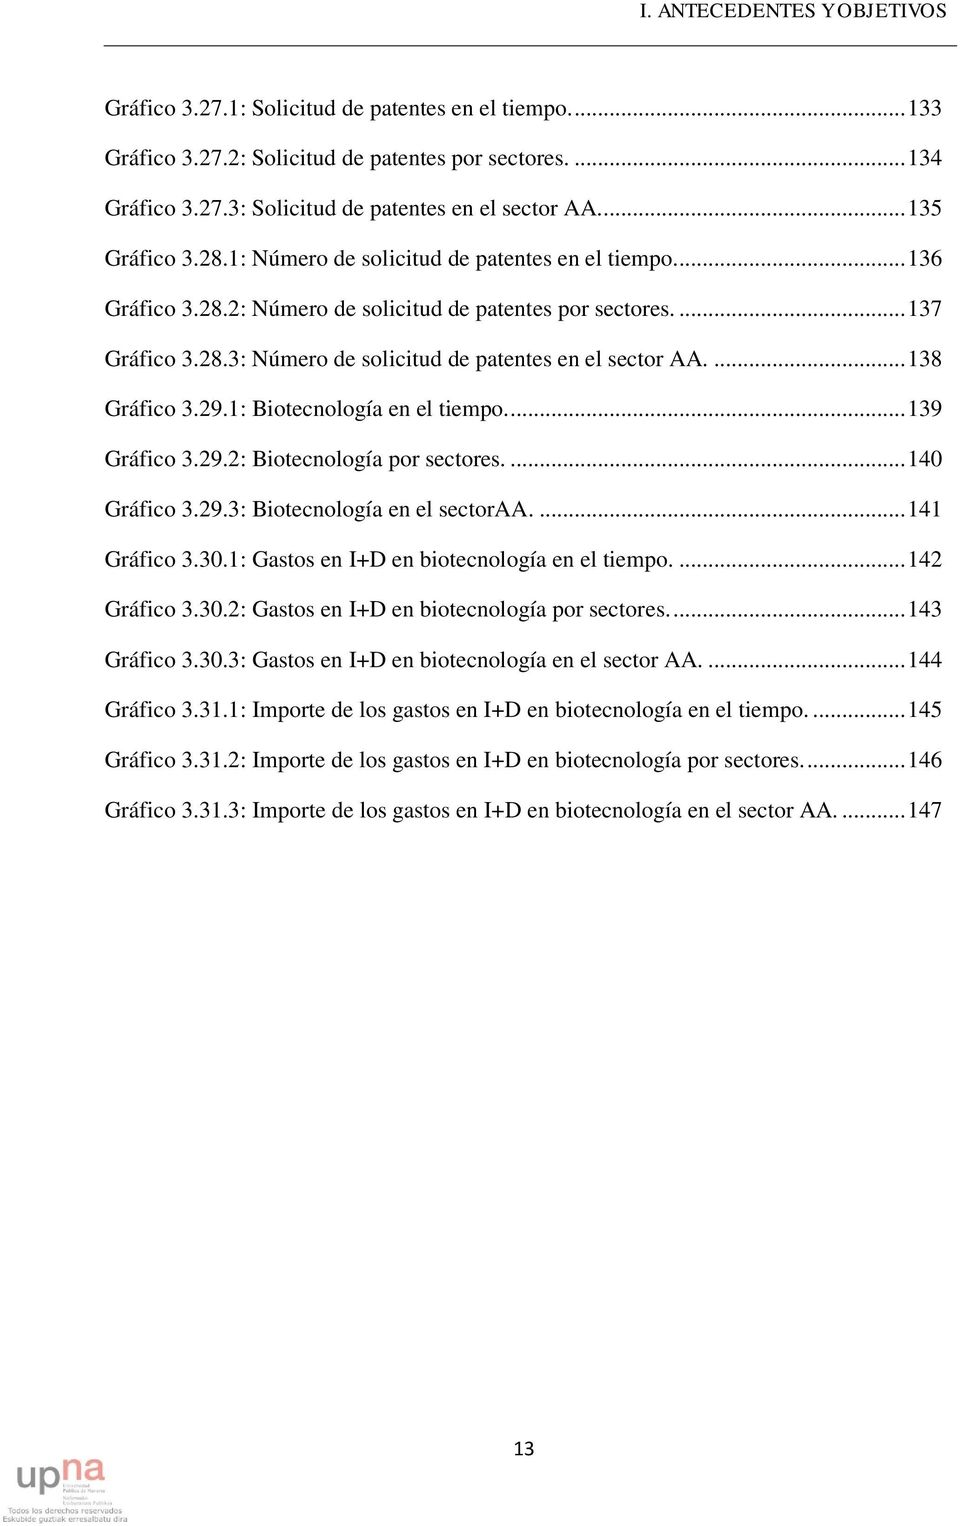 ... 138 Gráfico 3.29.1: Biotecnología en el tiempo.... 139 Gráfico 3.29.2: Biotecnología por sectores.... 140 Gráfico 3.29.3: Biotecnología en el sectoraa.... 141 Gráfico 3.30.